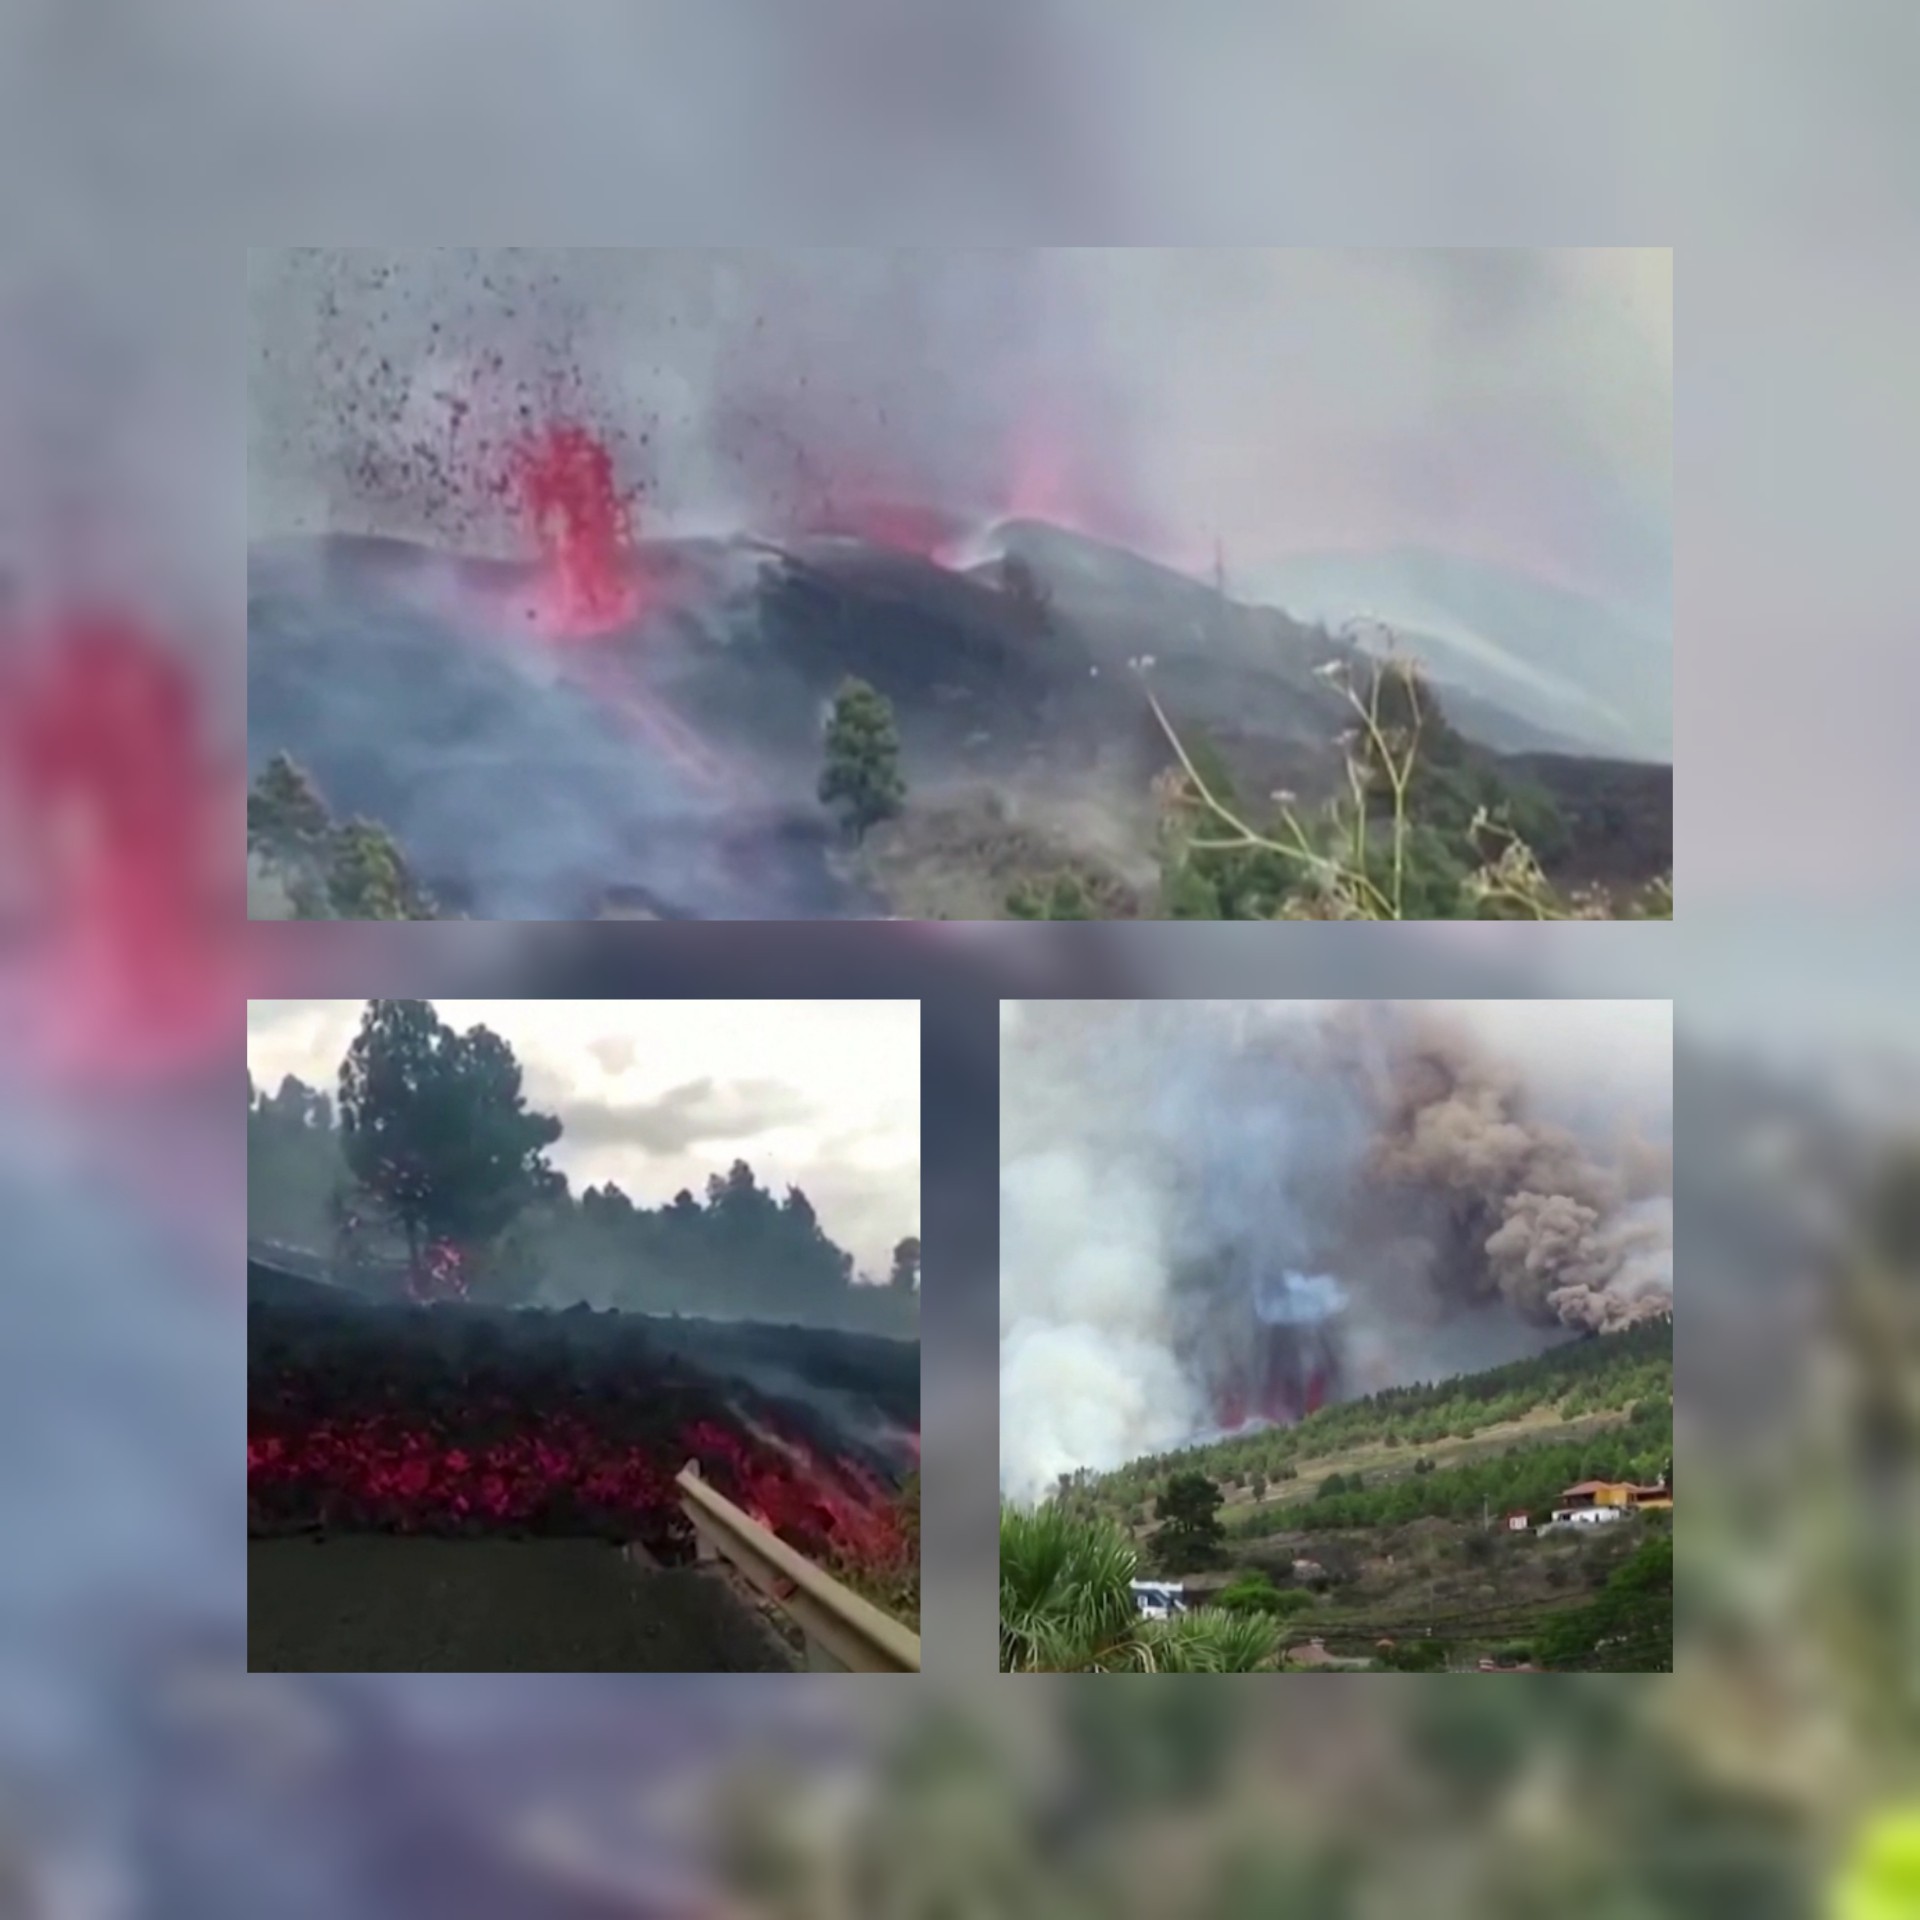 شاهد بالفيديو لحظة ثوران بركان كمبر فيجا في جزر الكناري الإسبانية